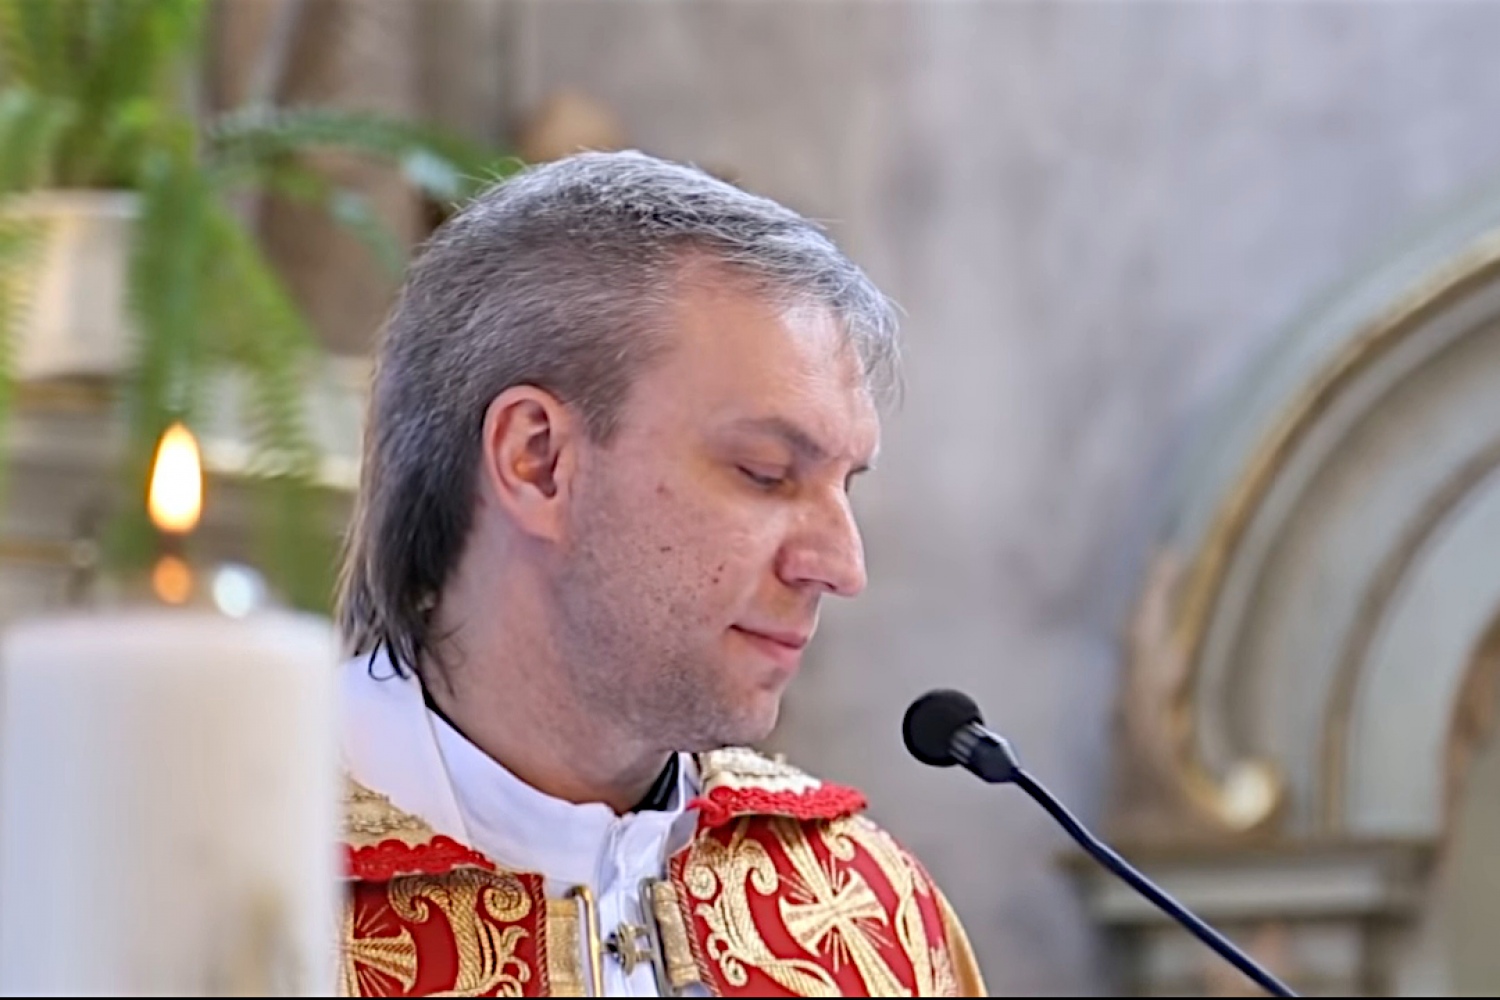 Видео исполнения белорусским священником «Аллилуйя» для молодоженов набрало 1 млн просмотров